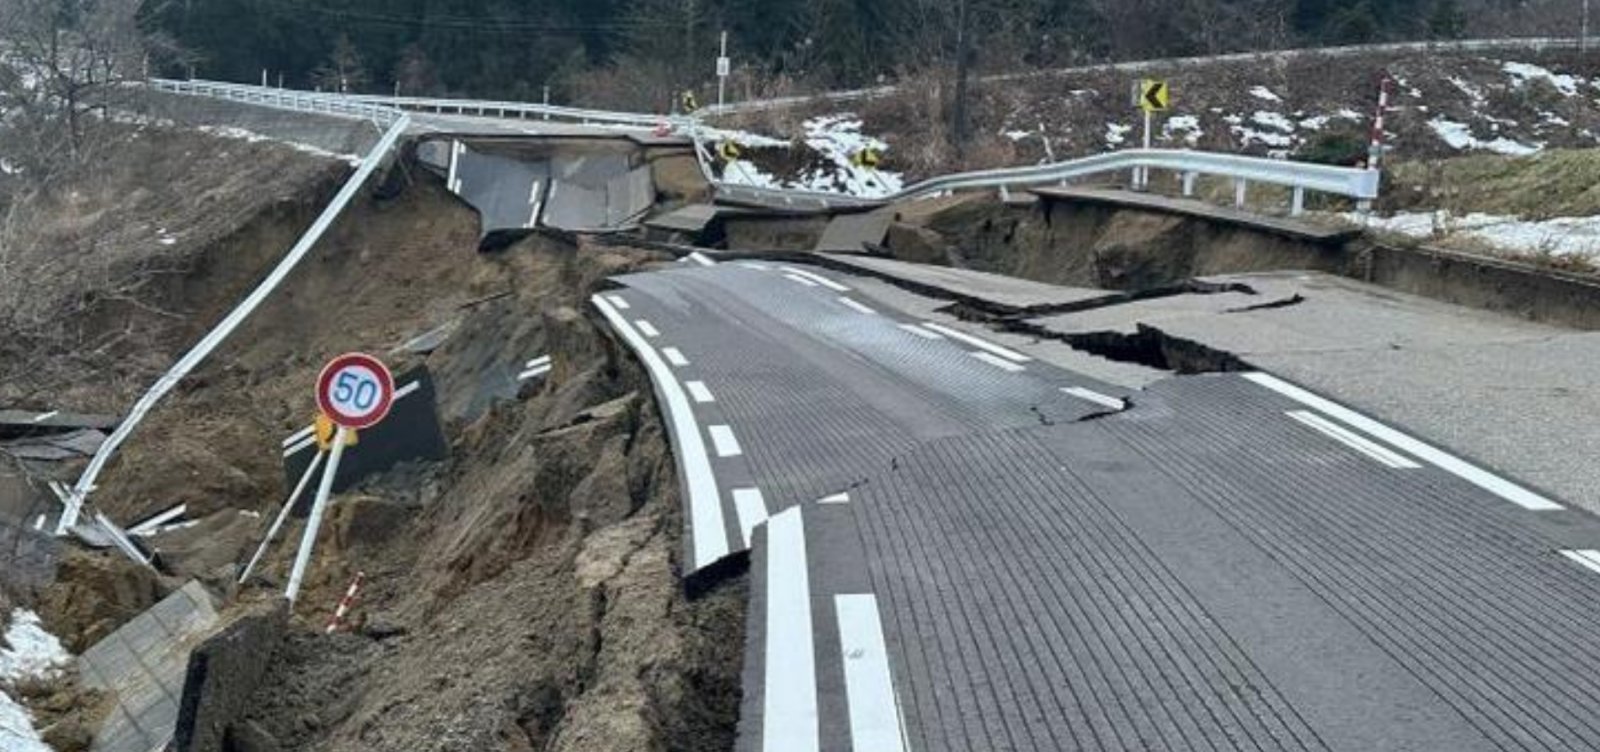 Sobe para 126 número de mortos em terremoto no Japão